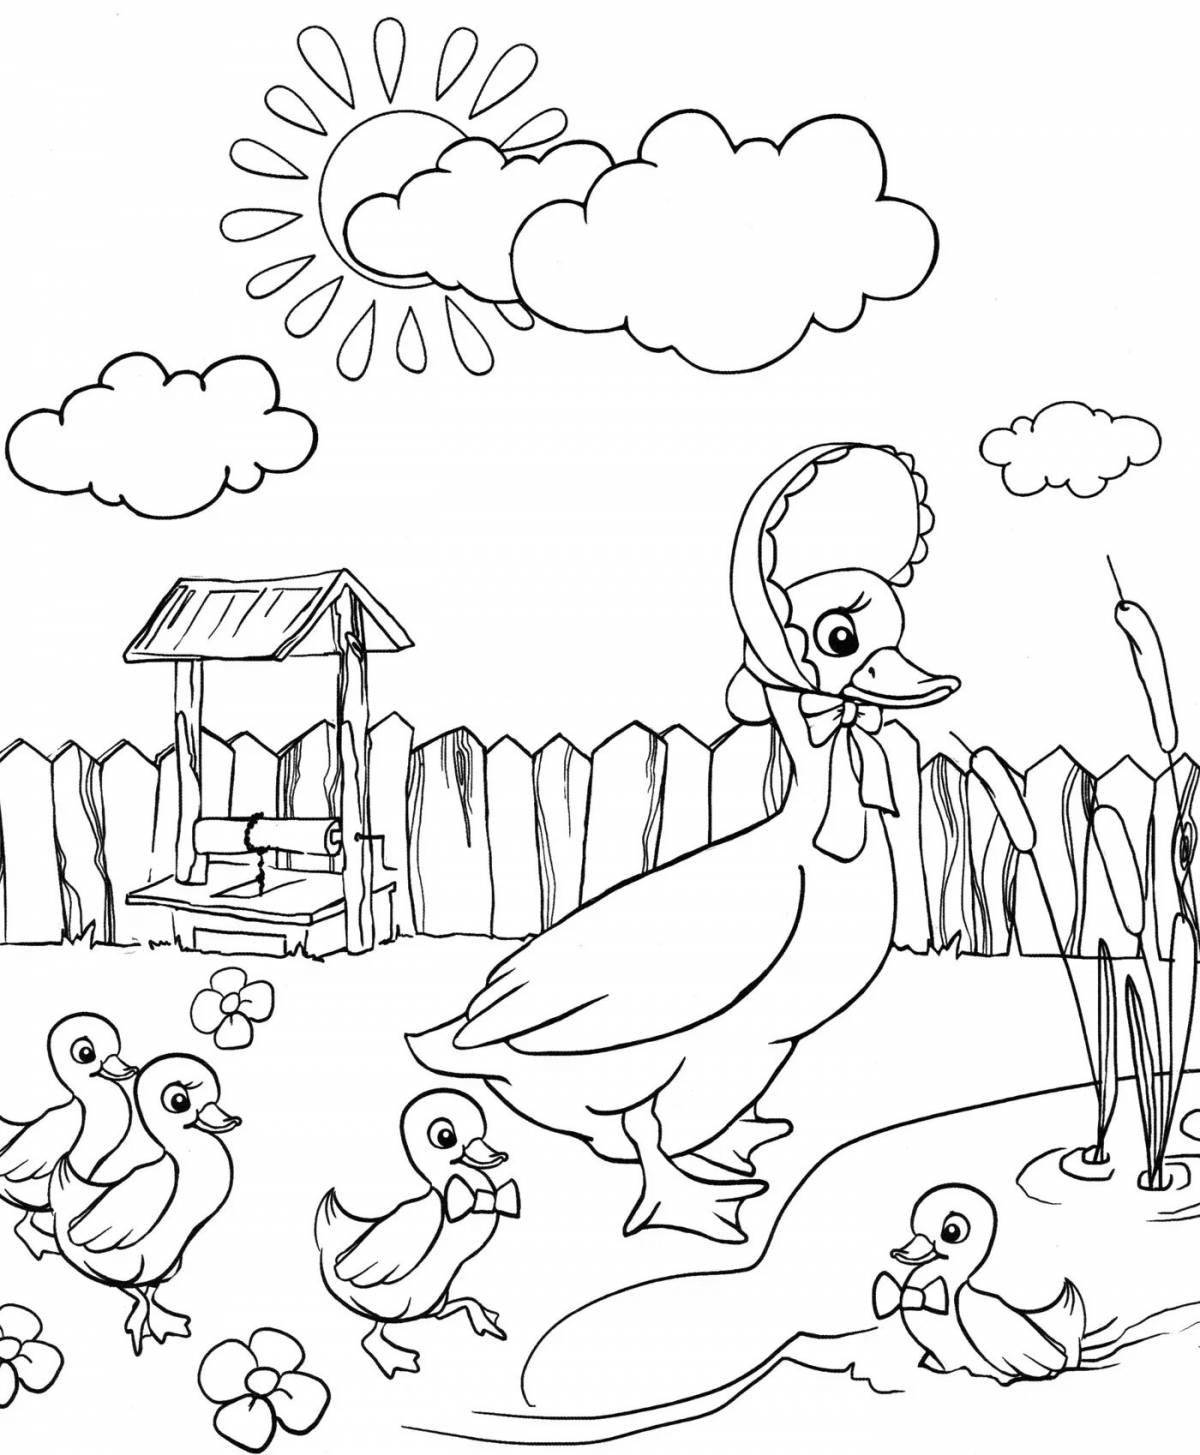 Игривая страница раскраски птичьего двора